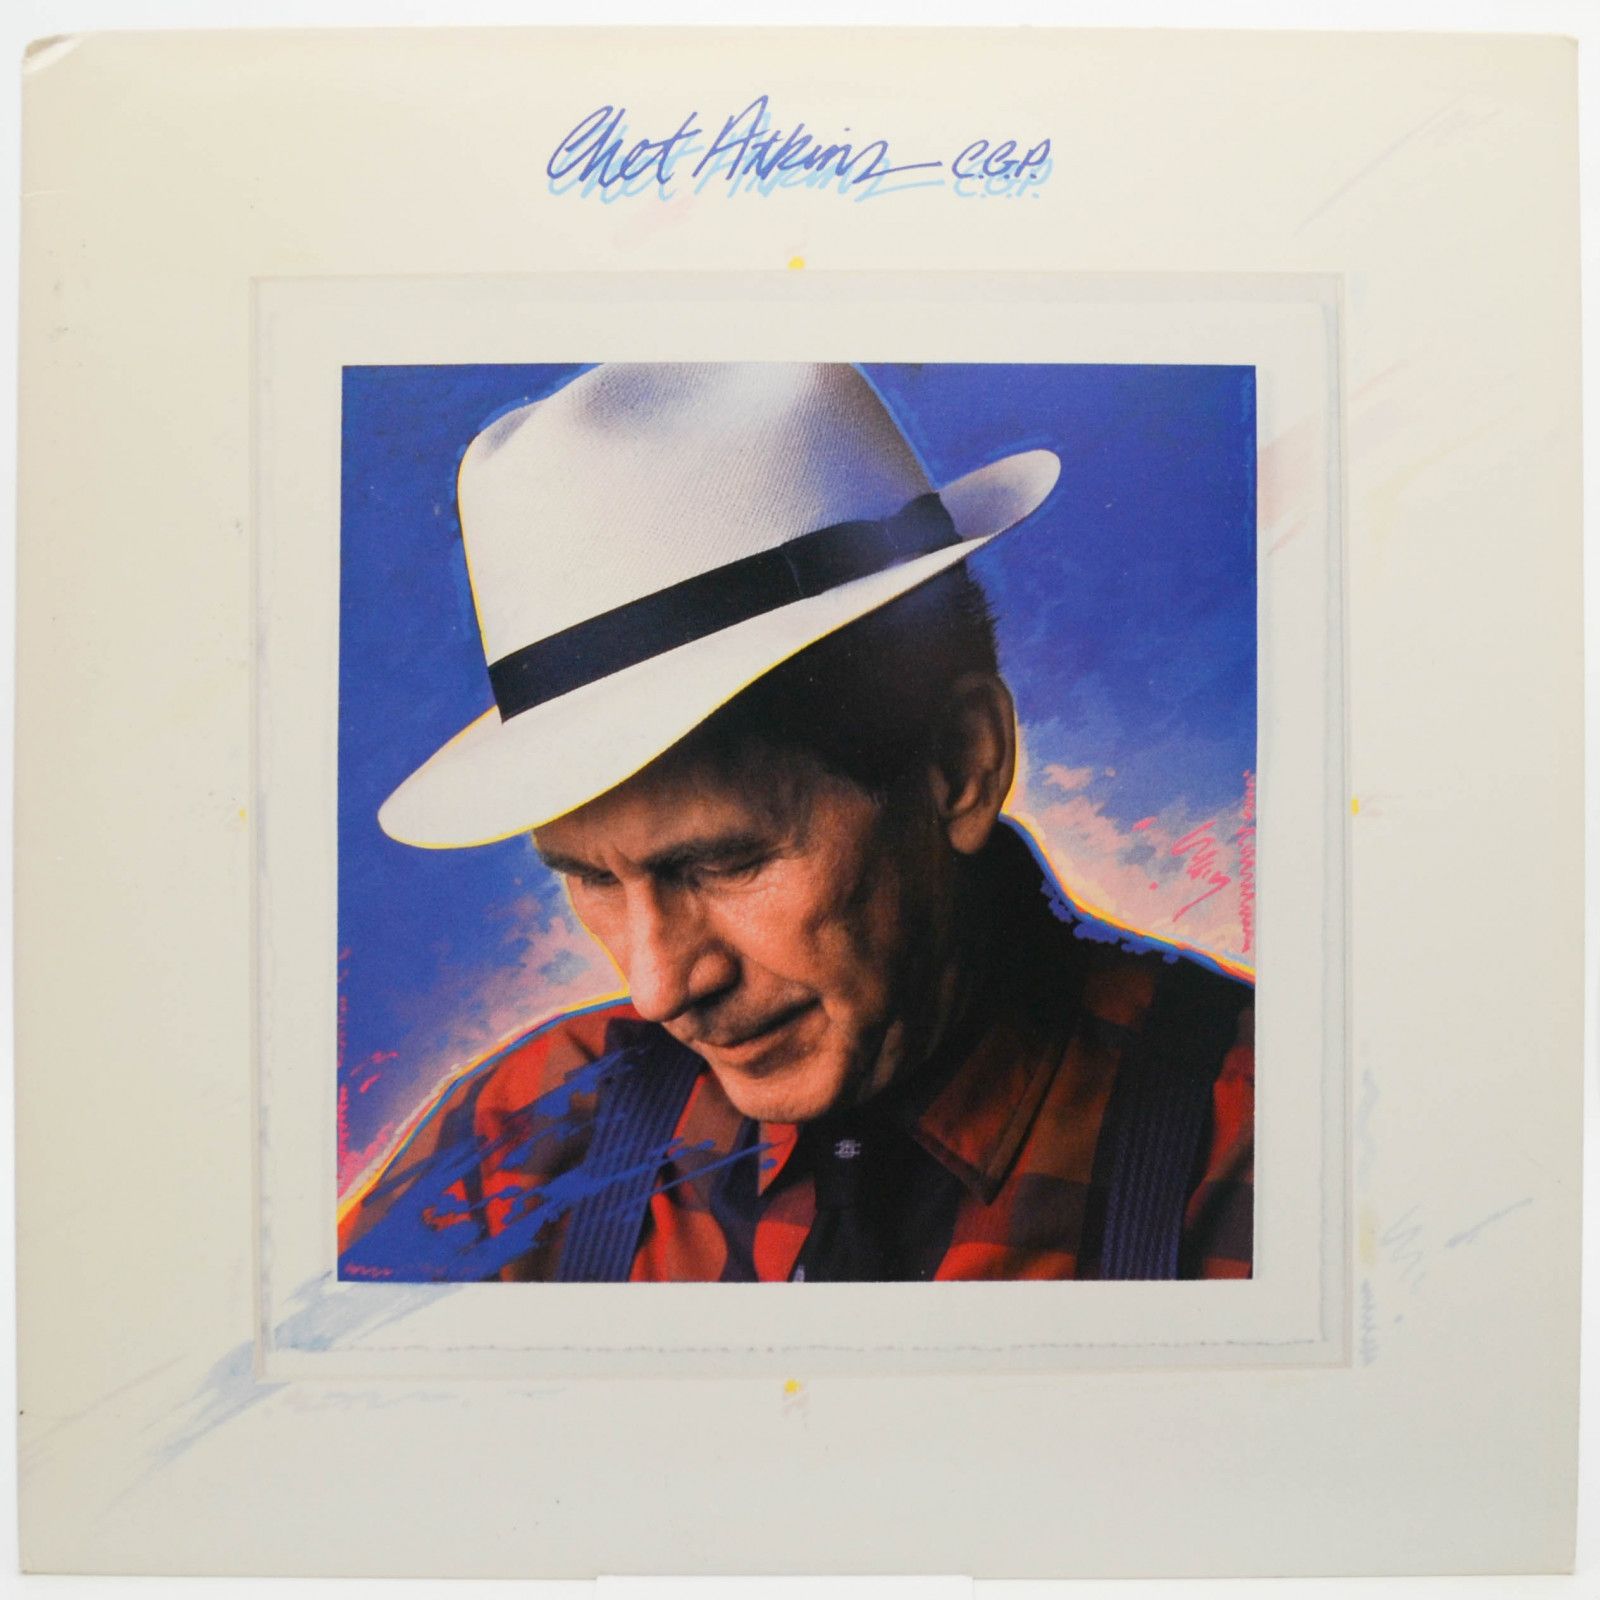 Chet Atkins — Chet Atkins C.G.P. (1-st, USA), 1988